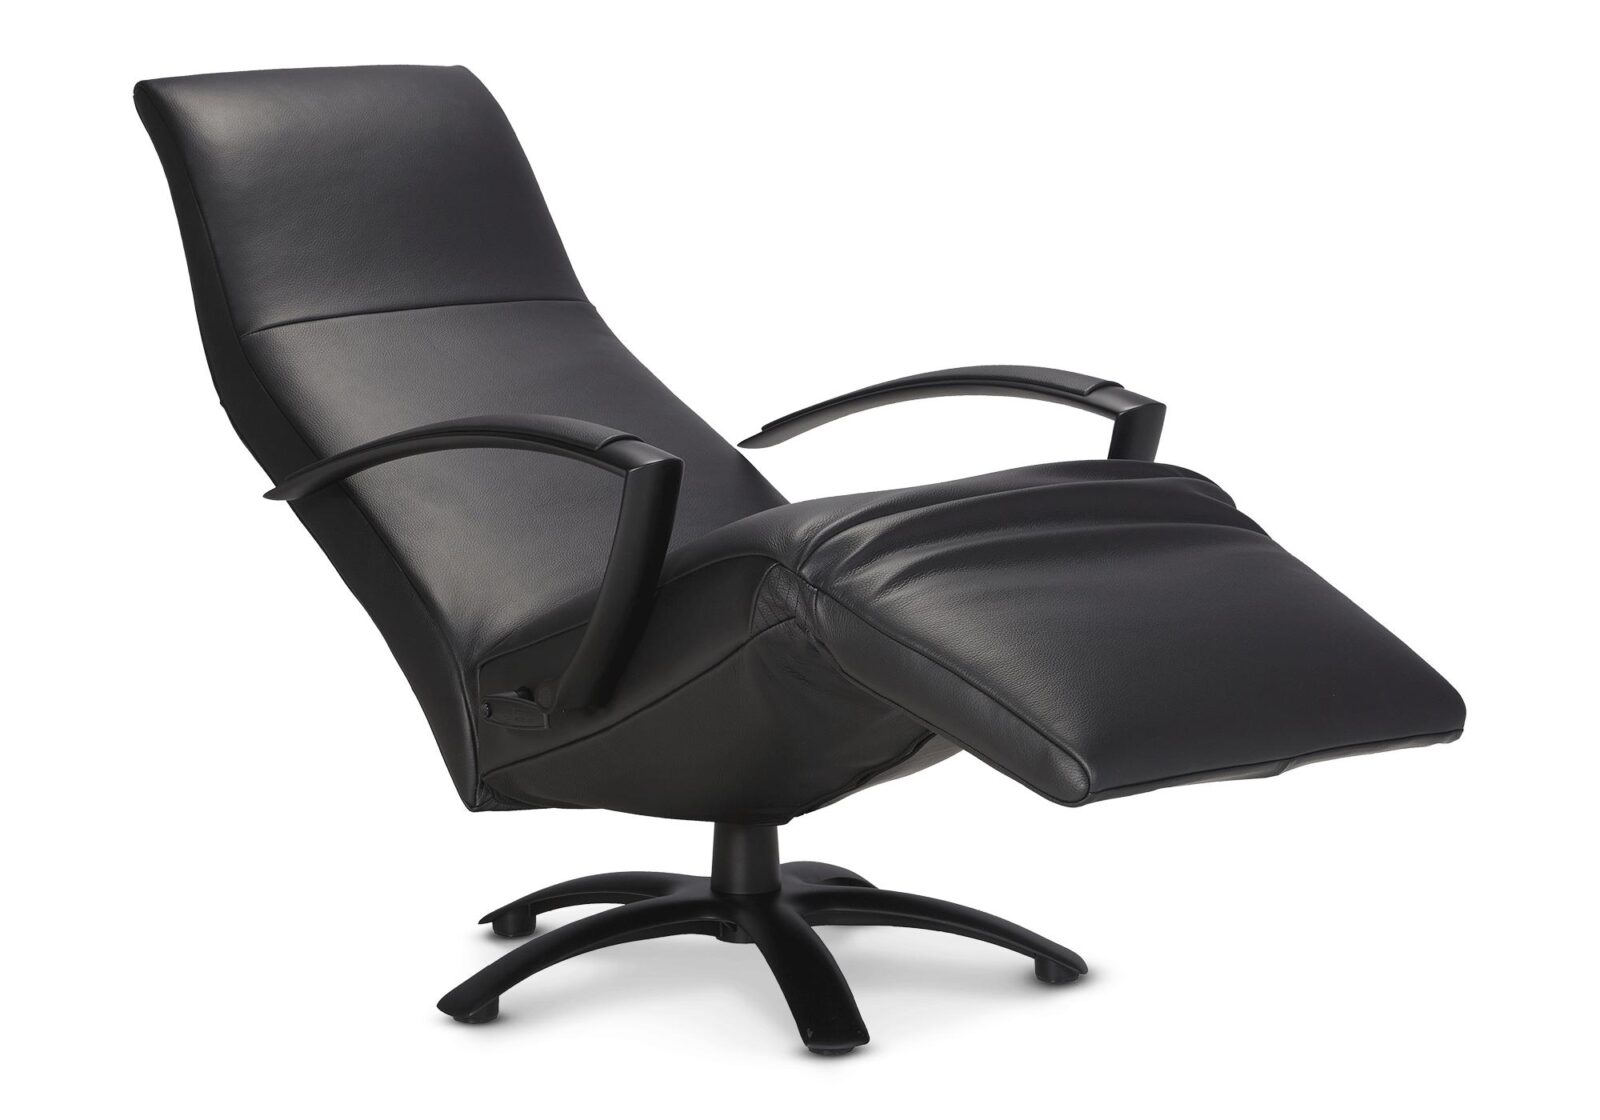 Relaxsessel Brainbuilder  manuell verstellbar. Bezug: Leder. Farbe: Schwarz. Erhältlich bei Möbel Gallati.